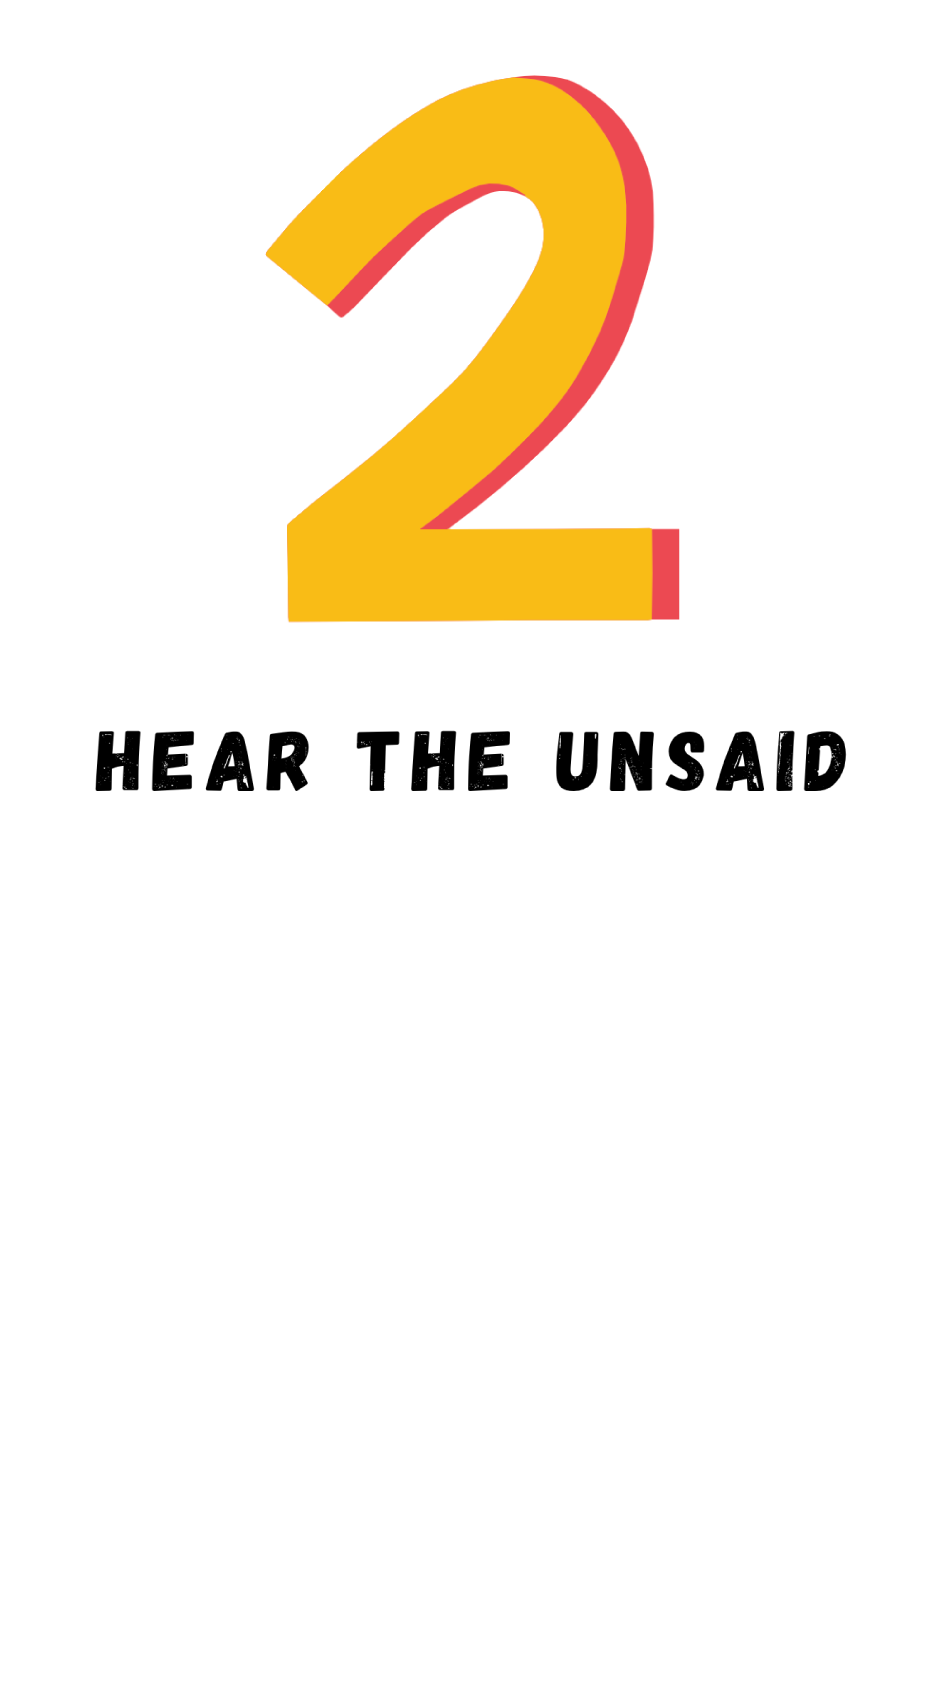 2. Hear the Unsaid